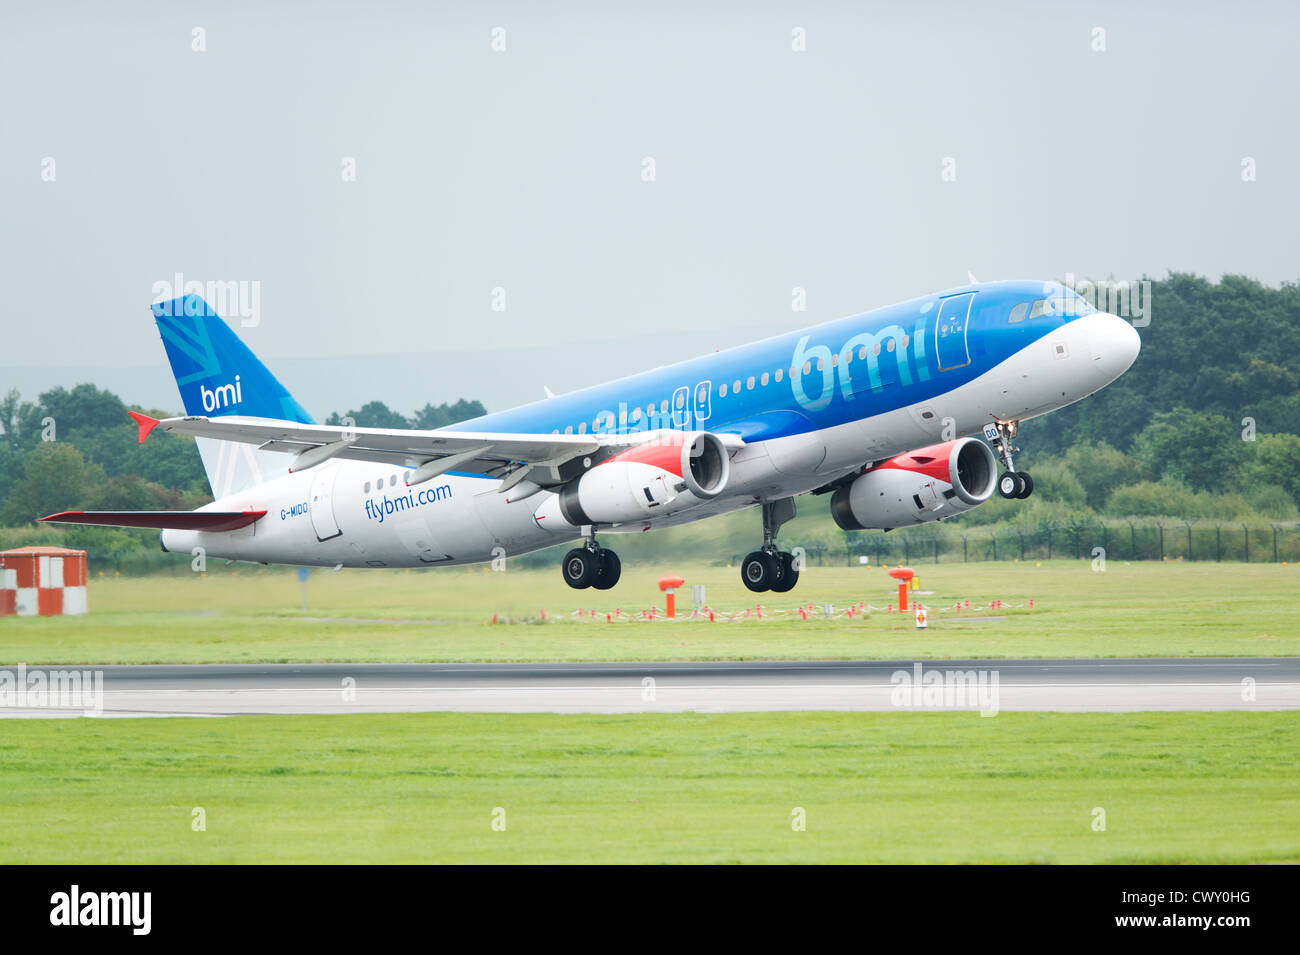 Un BMI (British Midland International) Airbus A321 despegó del aeropuerto internacional de Manchester (uso Editorial solamente) Foto de stock